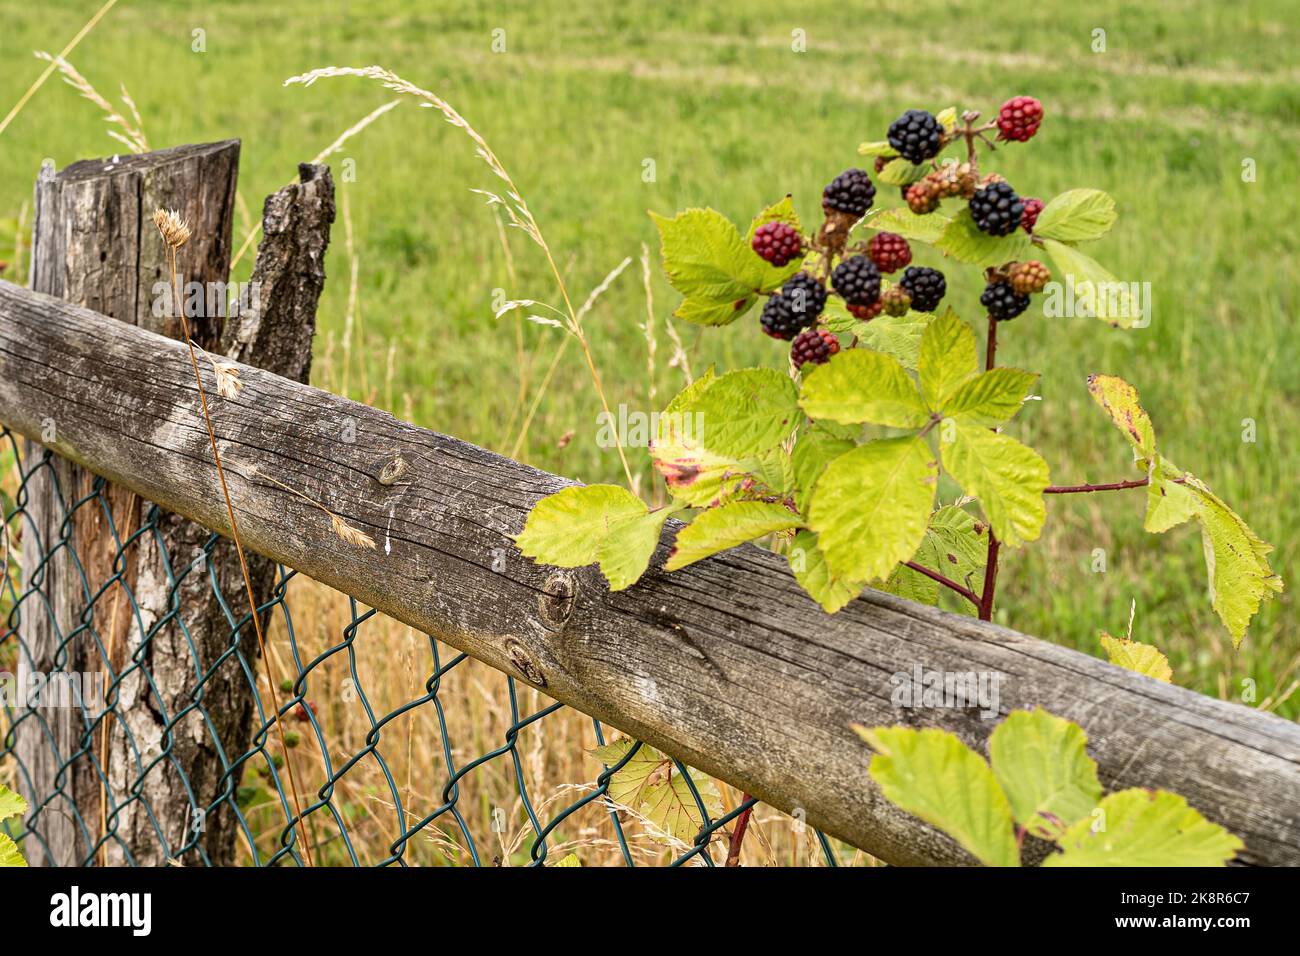 Der Blick auf eine wilde Brombeerpflanze, die am Zaun vor dem Feld wächst  Stockfotografie - Alamy